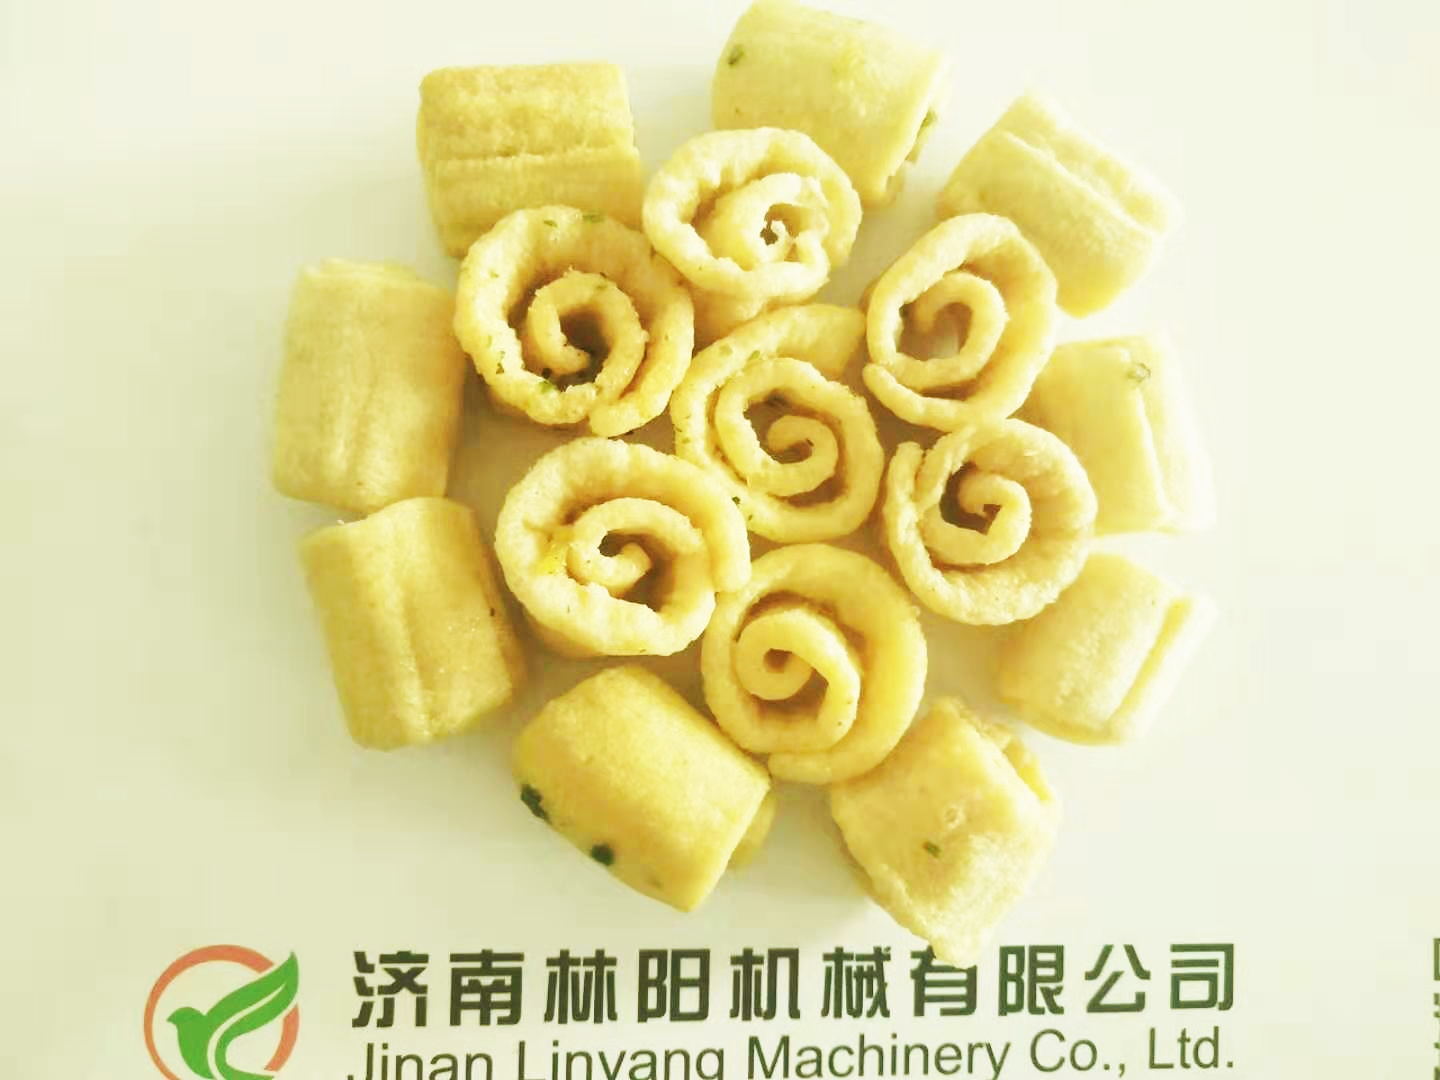 济南林阳机械酱油饼生产设备供应商_质量好休闲食品加工设备